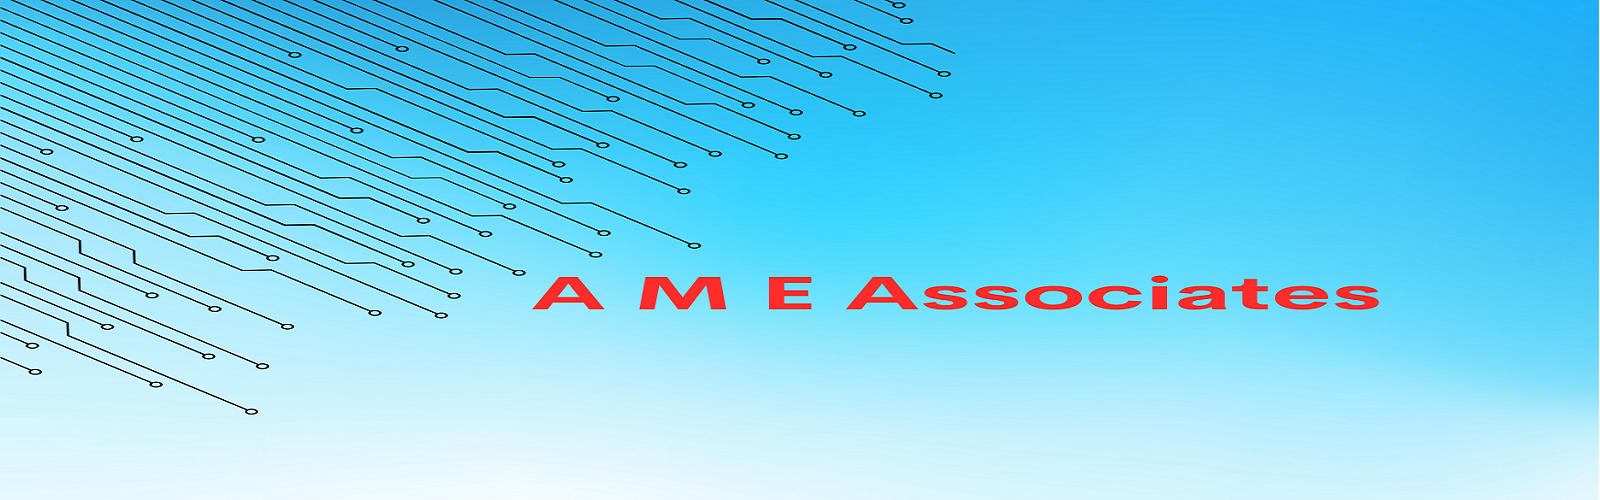 slider of A M E associates